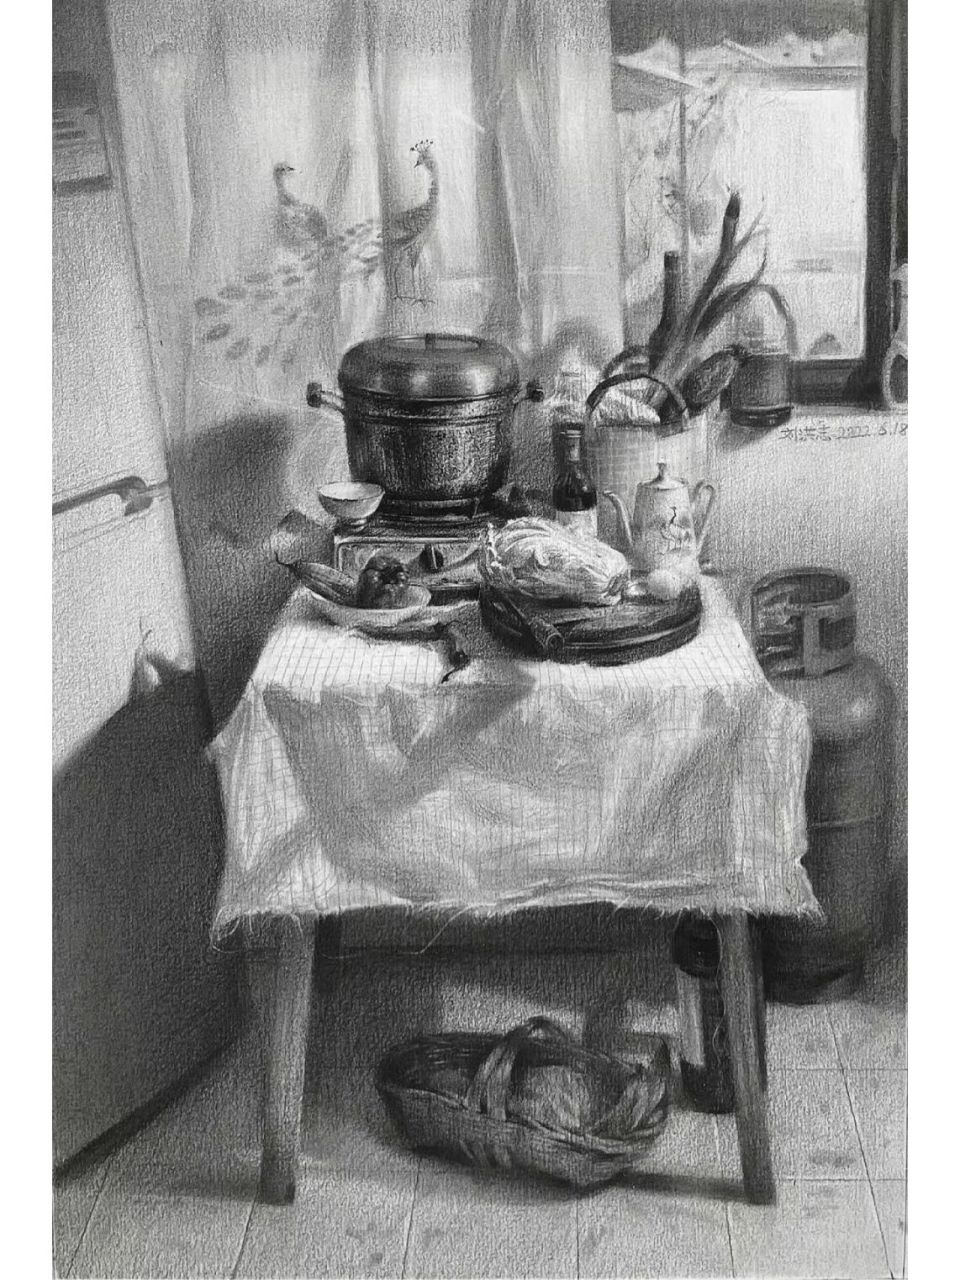 设计素描《厨房一角》 桌上的辣椒,大白菜,一看就很有年代感的砧板,y